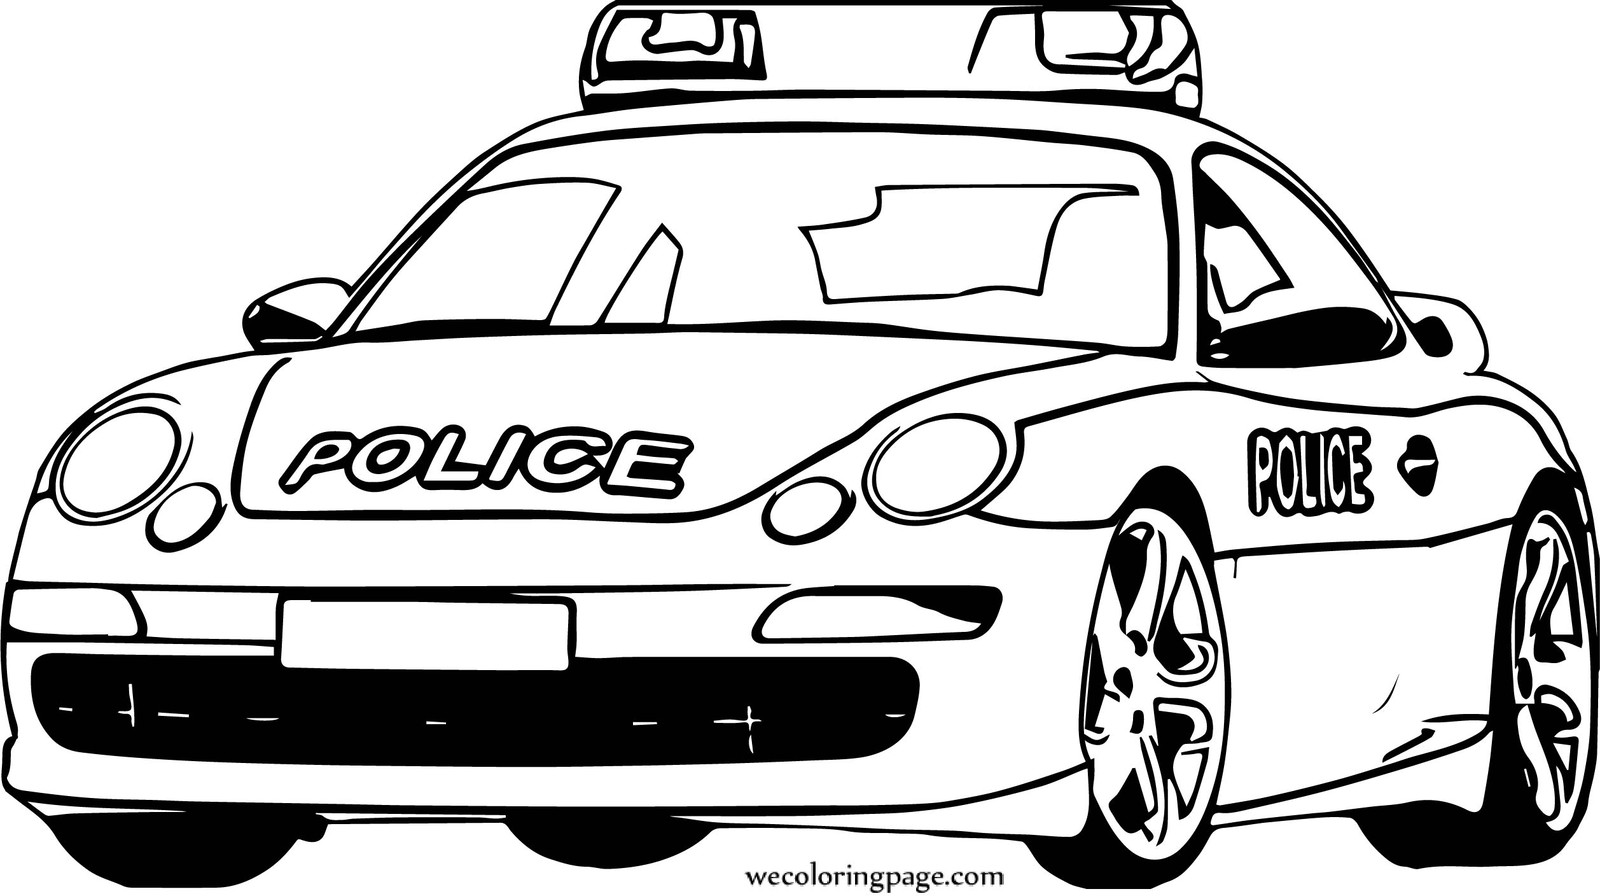 Полицейские машины мира. Машины и техника — купить на сайте эталон62.рф